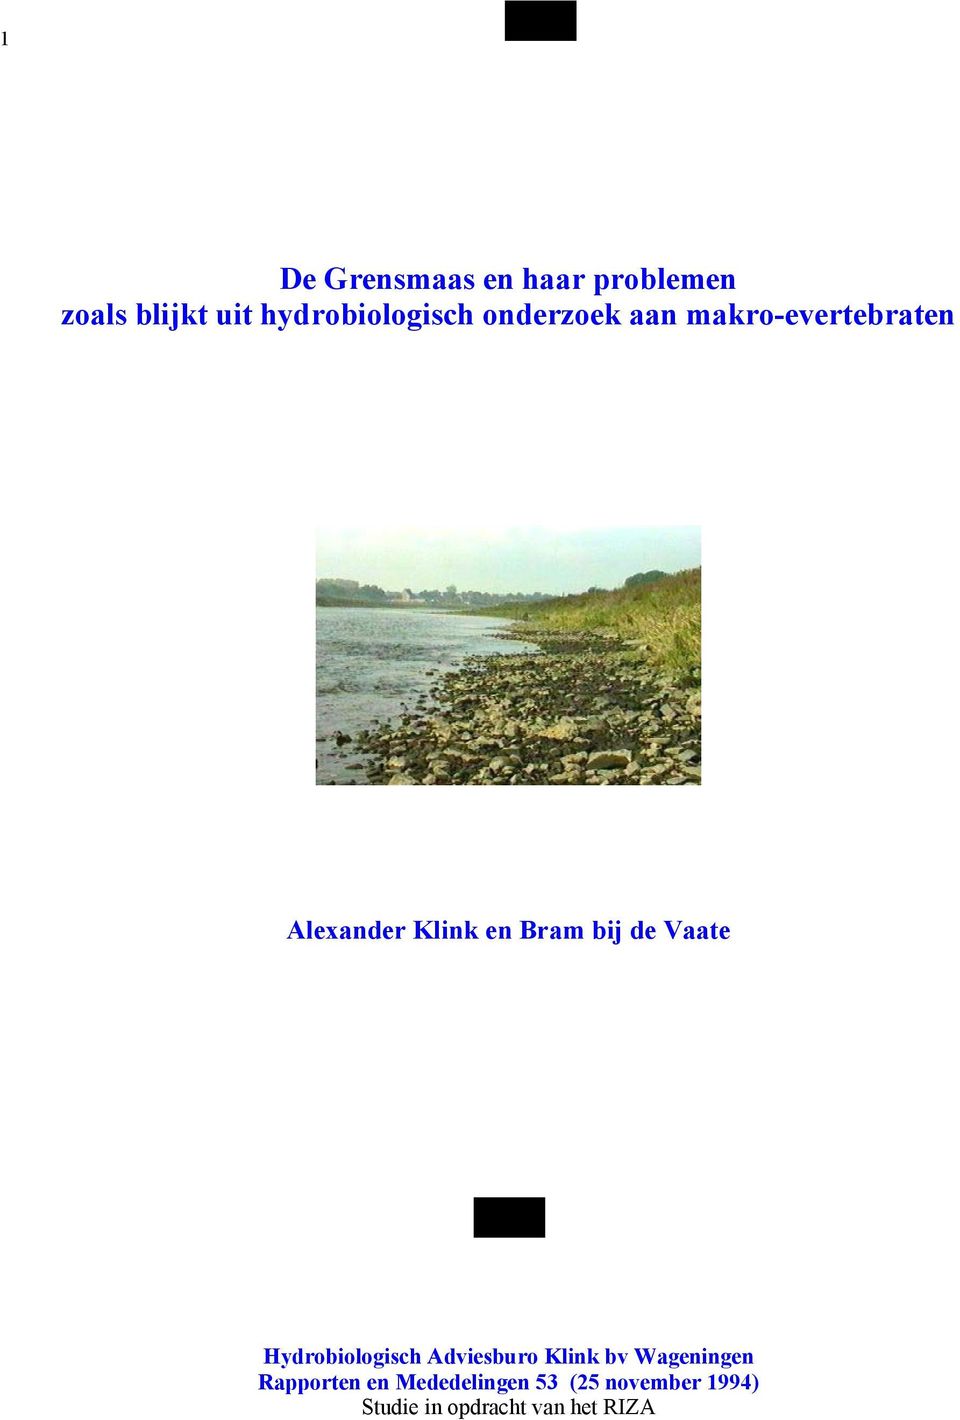 Vaate Hydrobiologisch Adviesburo Klink bv Wageningen Rapporten en